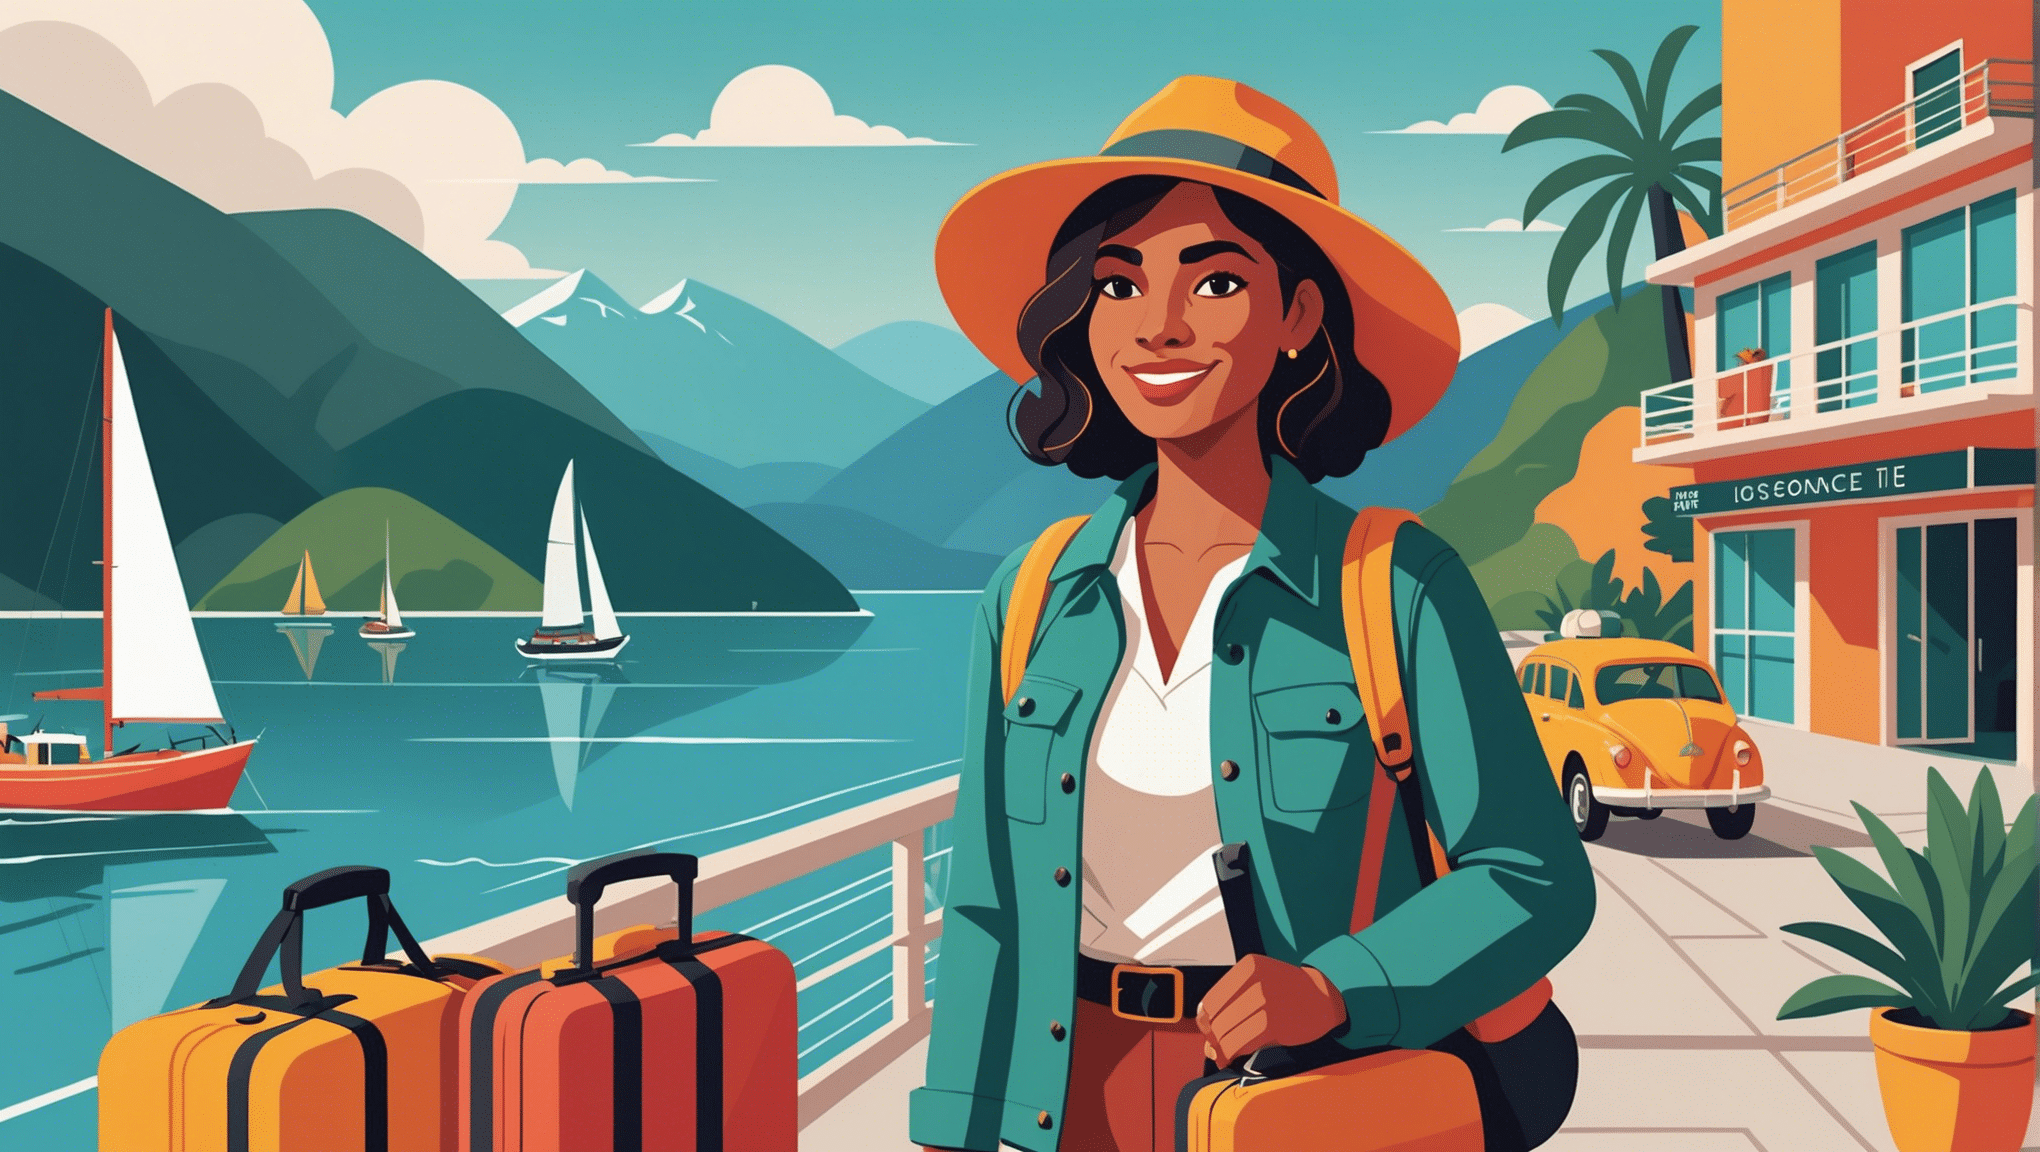 aprende consejos de seguridad esenciales para viajar sola siendo mujer y disfruta al máximo de tu experiencia de viaje.